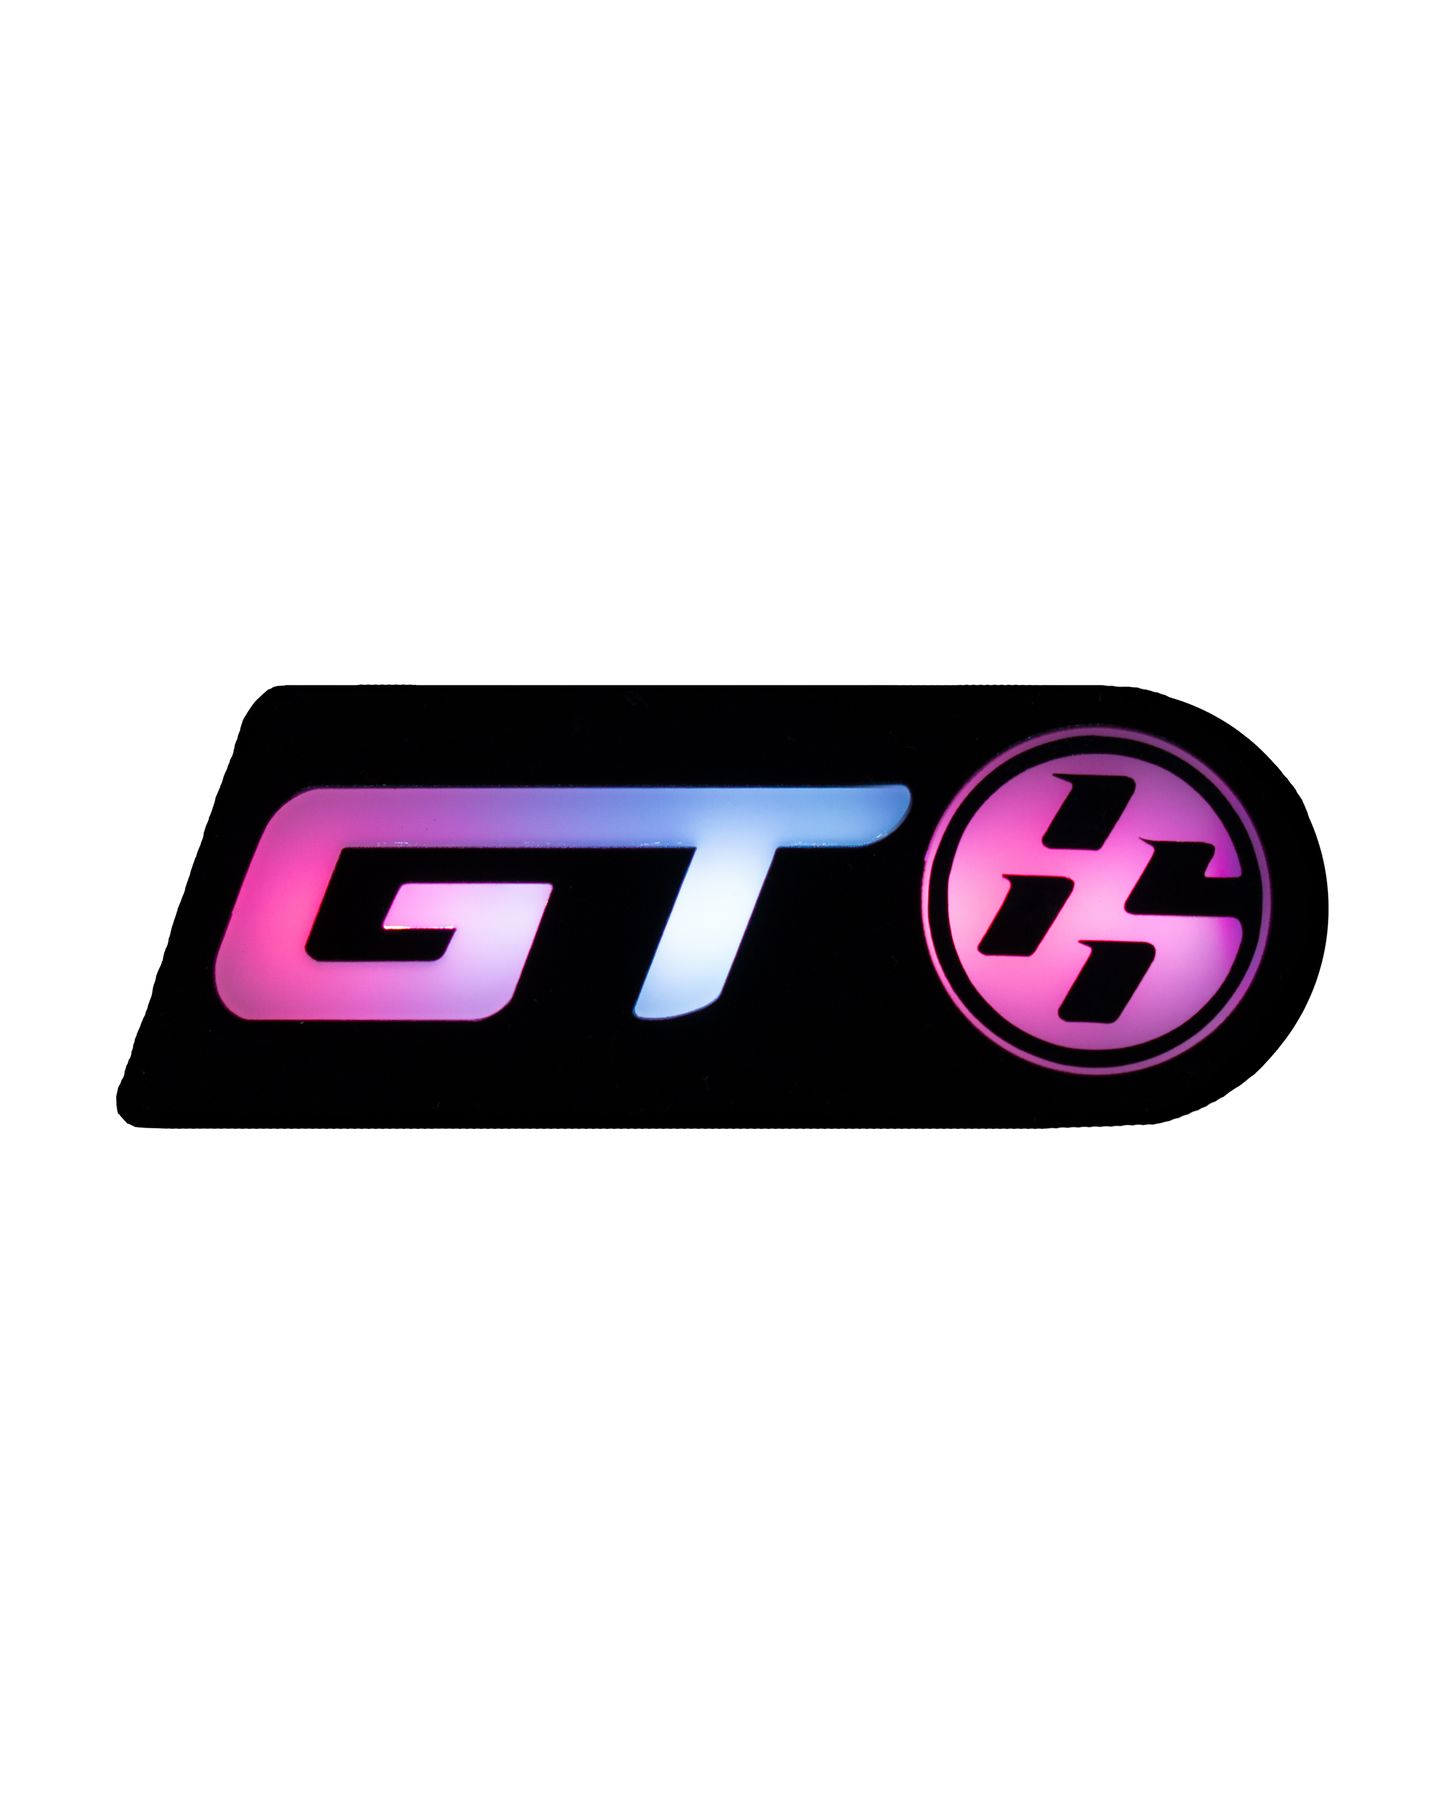 Lit Logos GT86 Badge